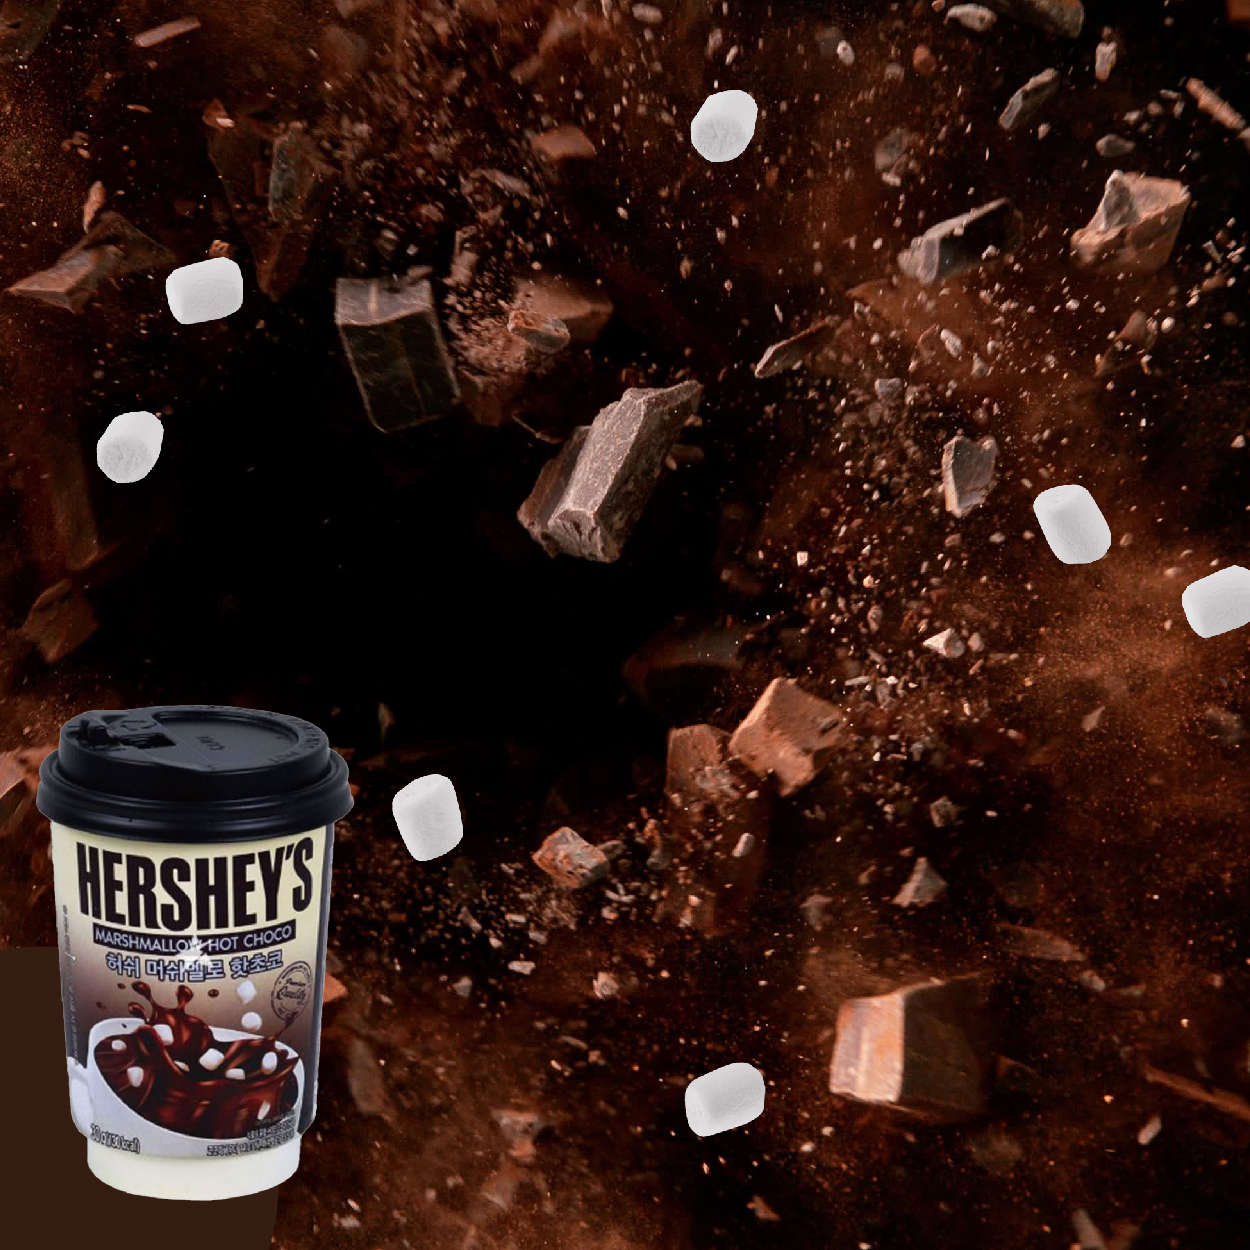 Hershey’s 雪花巧克力粉  冬天必喝熱可可 療癒系飲品撫慰你受傷的心靈